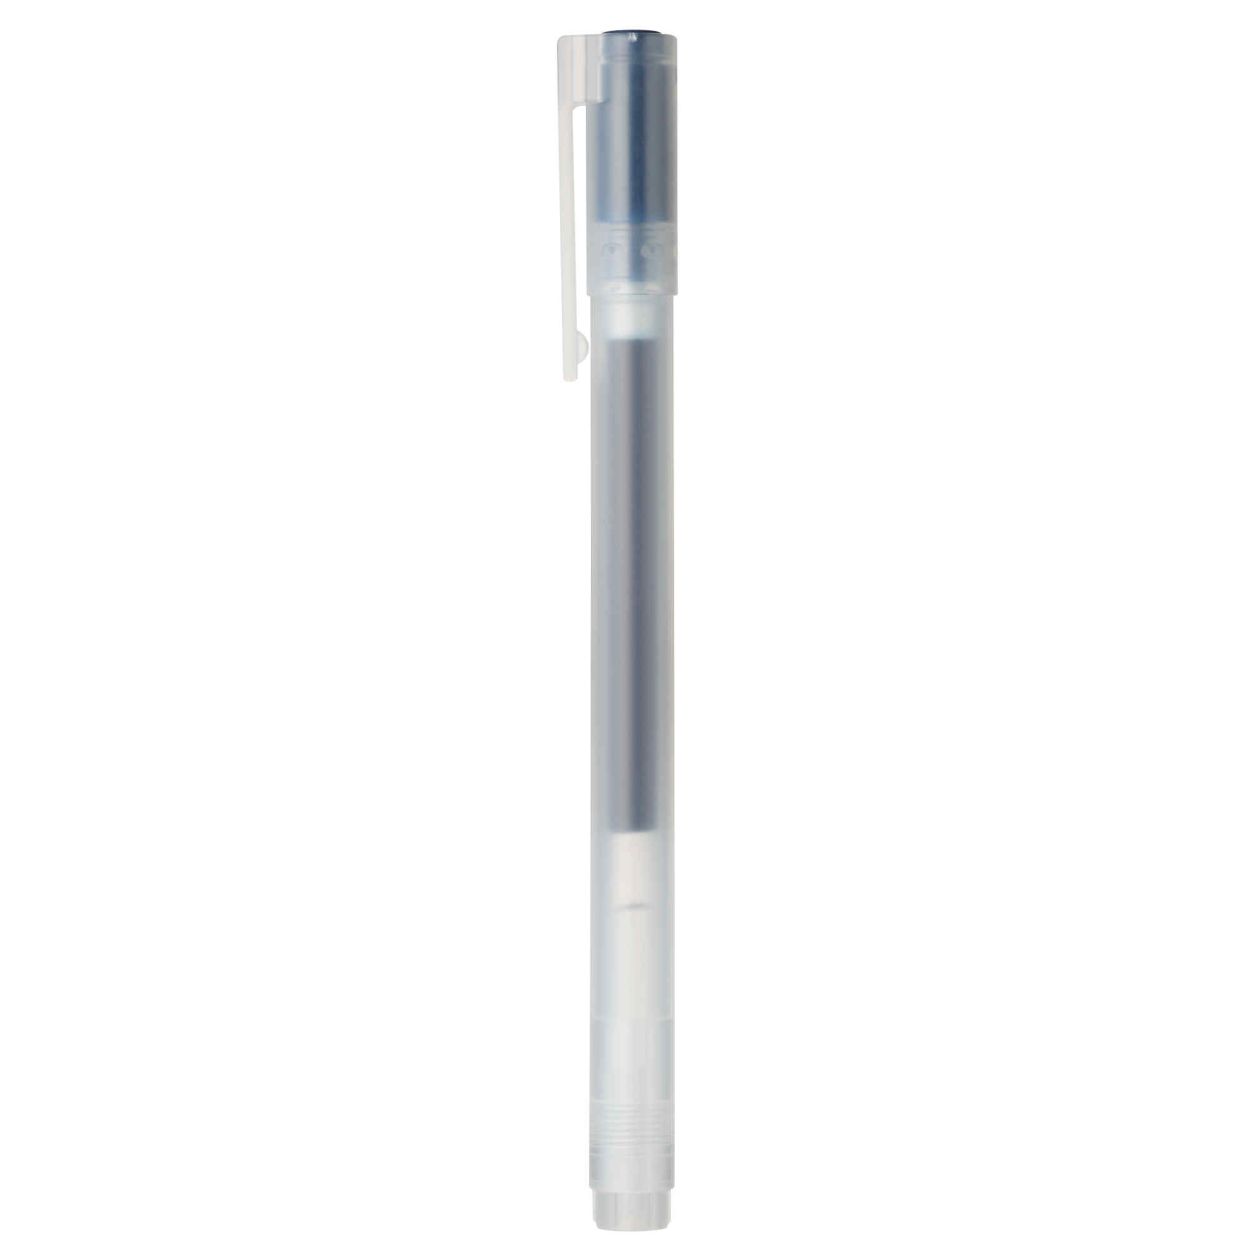 Gel Ink Ballpoint Pen 0.5mm